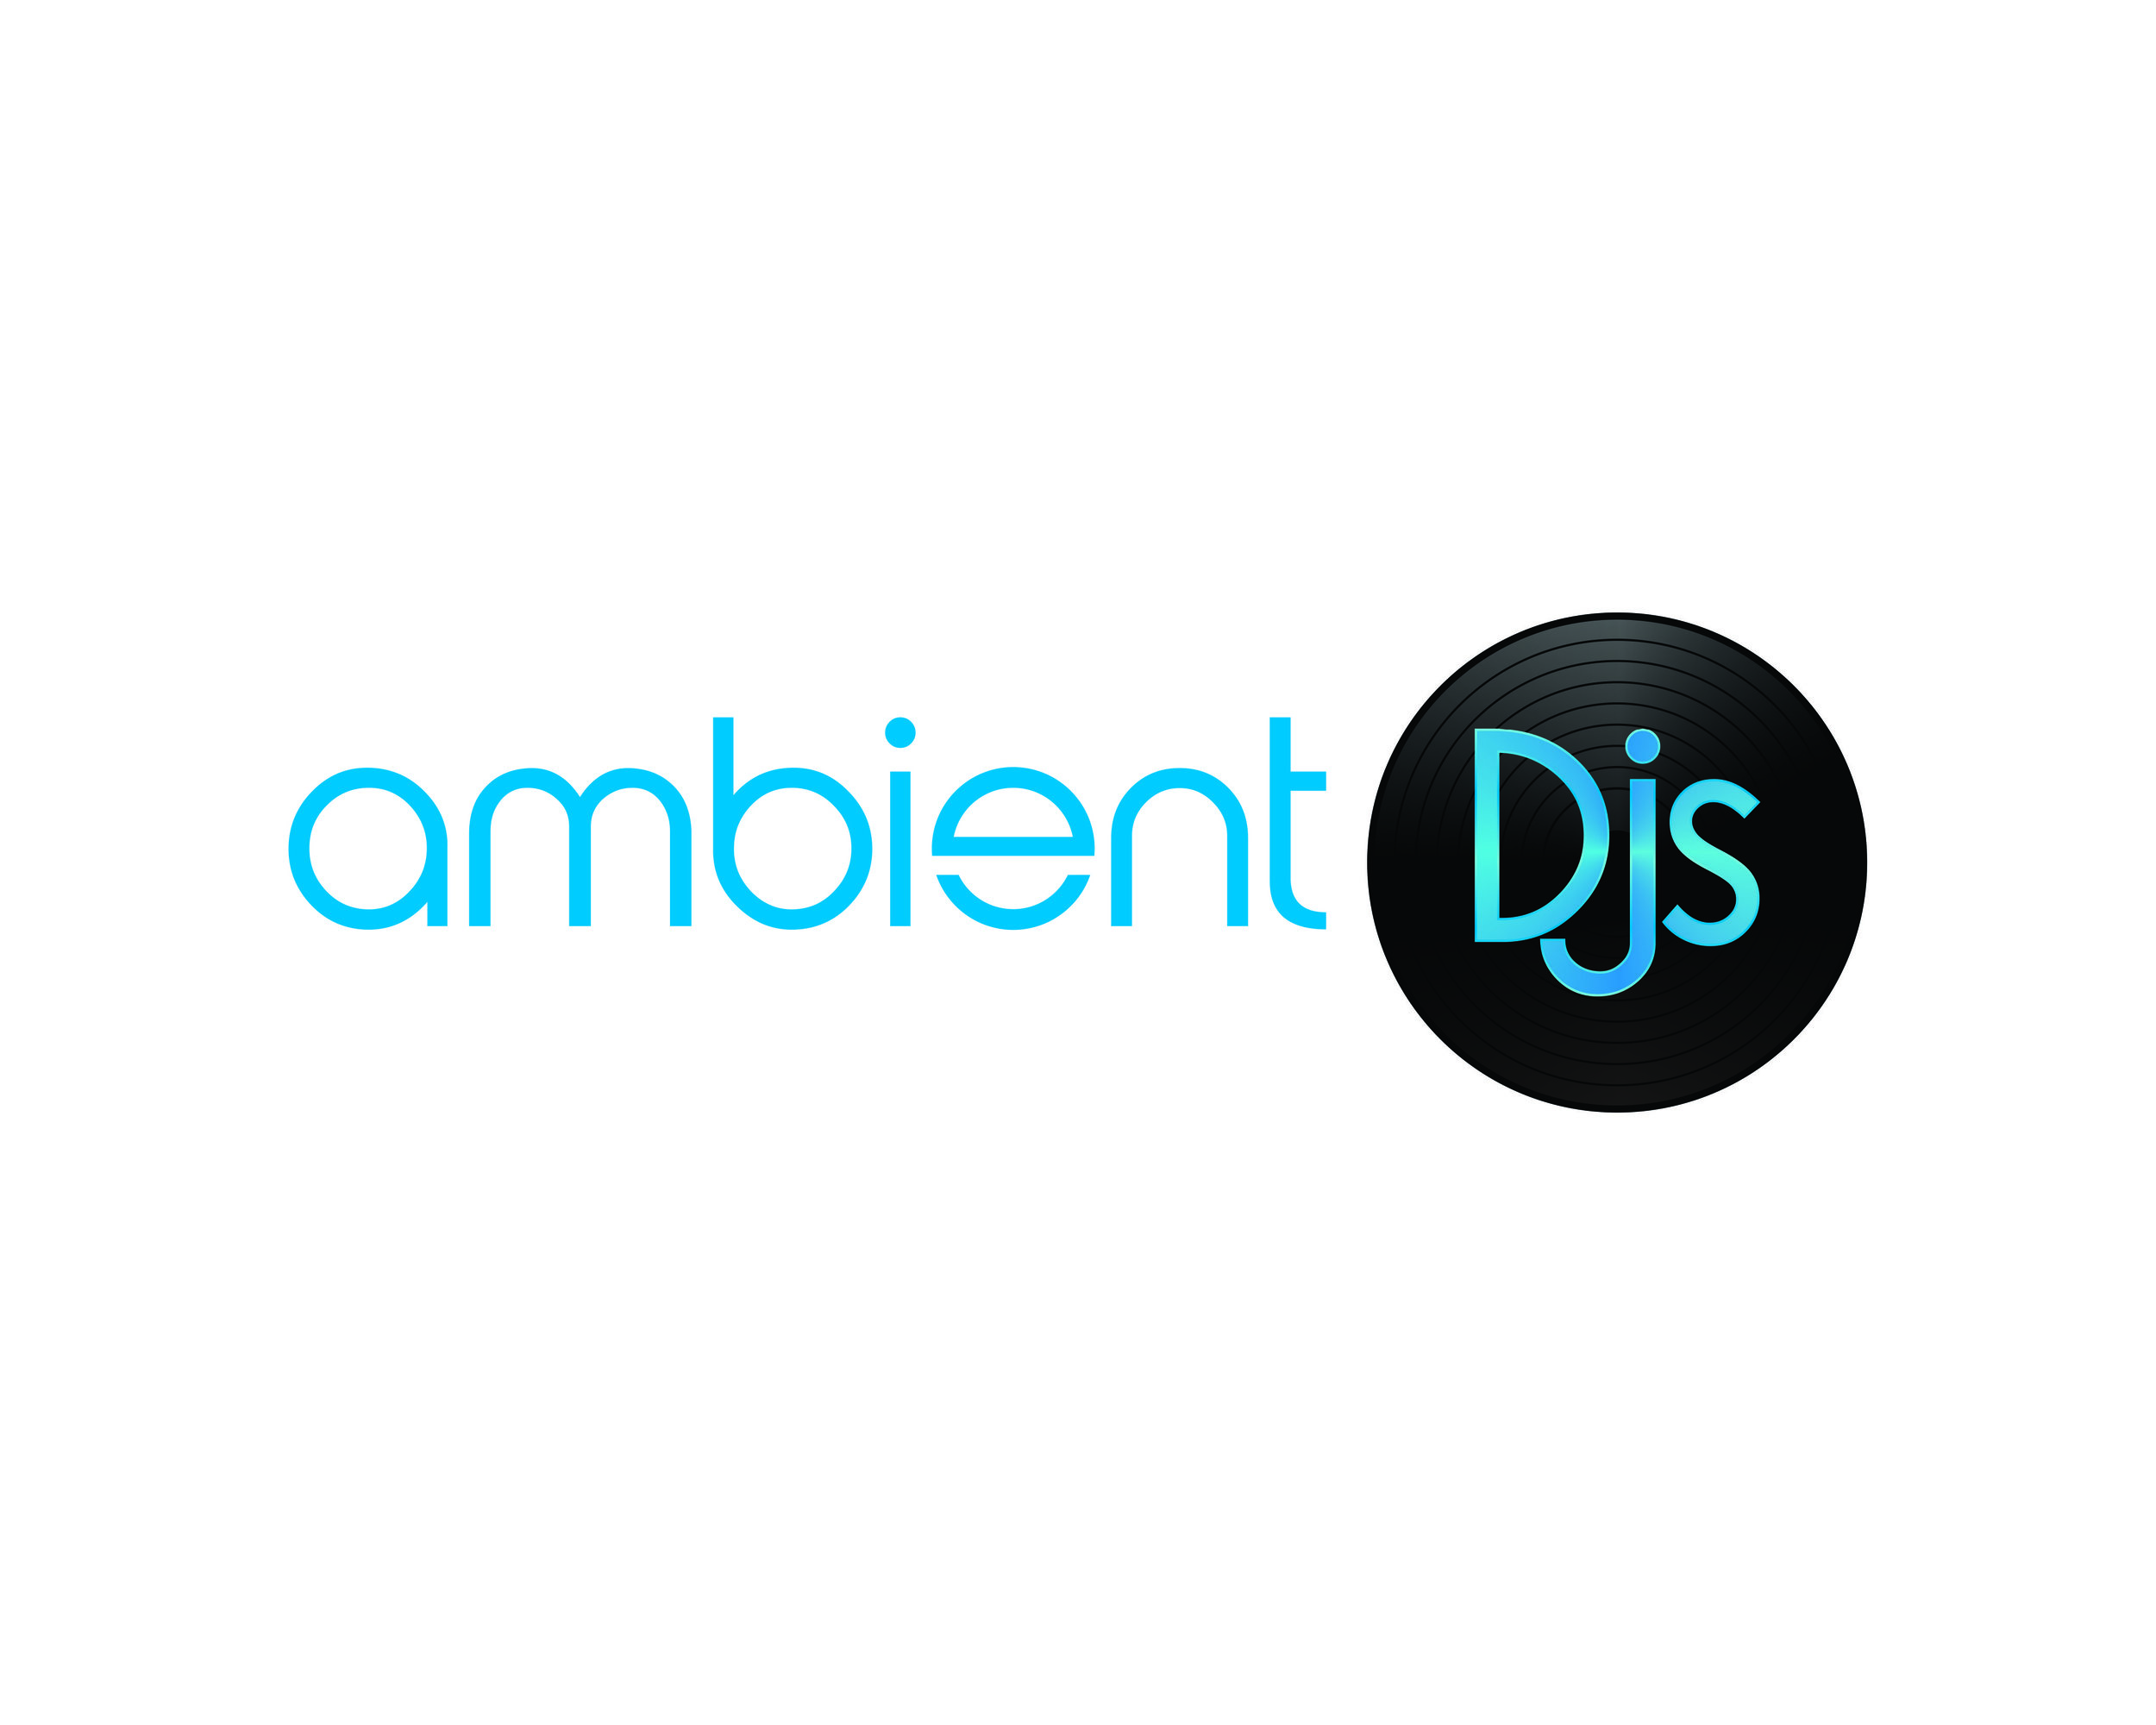 Ambient DJs Blue.jpg